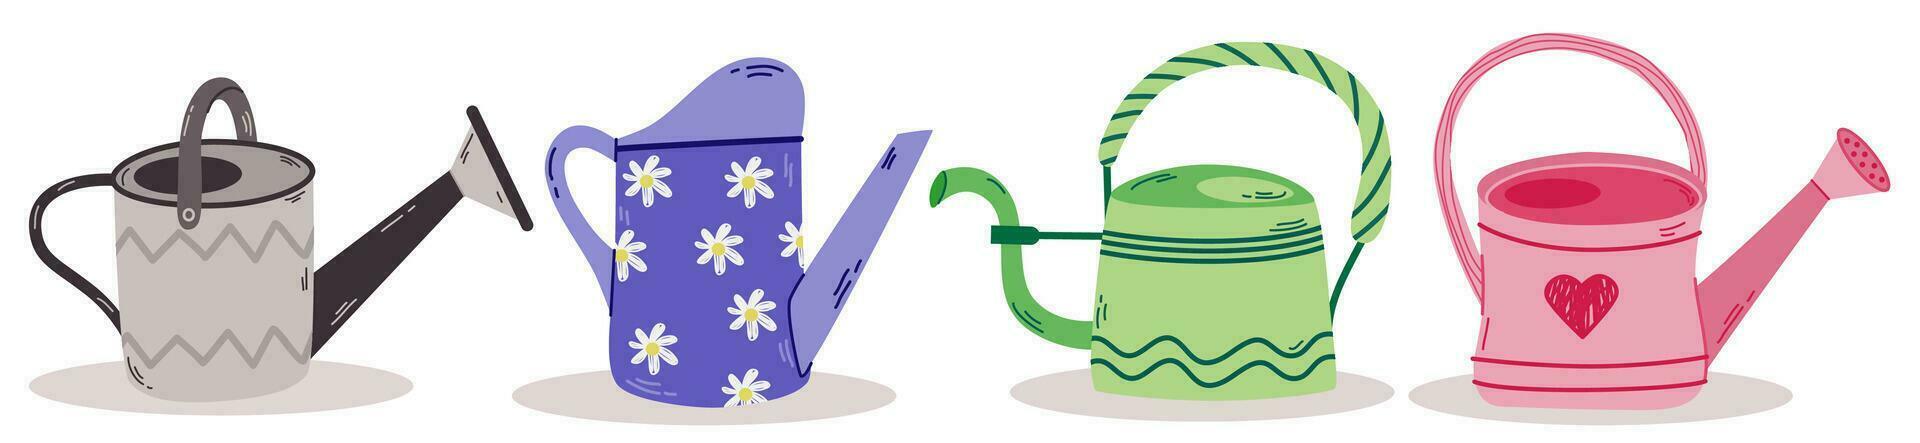 conjunto de vistoso dibujos animados riego latas jardinería herramientas a agua el plantas y flores.estacionales simbolos adecuado para álbum de recortes, saludo tarjeta, pegatinas, flor tienda. vector